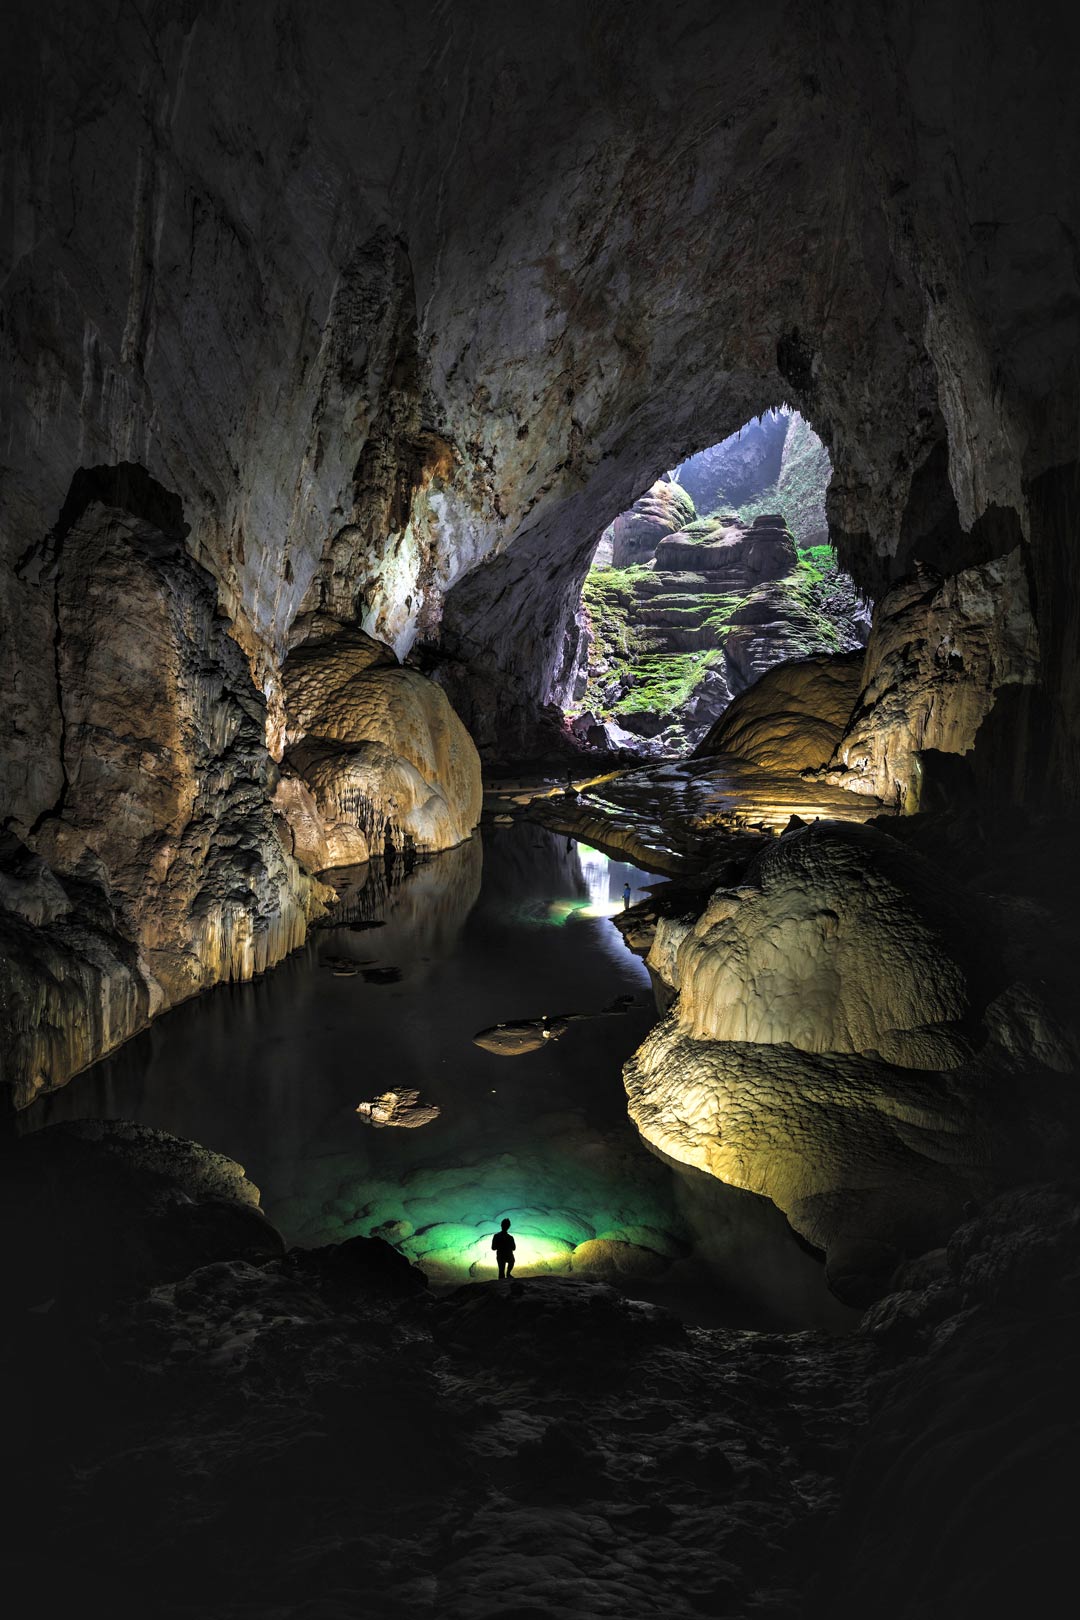 La rivière souterraine de Hang Son Doong éclairée par un puits de lumière et la torche d'un explorateur.